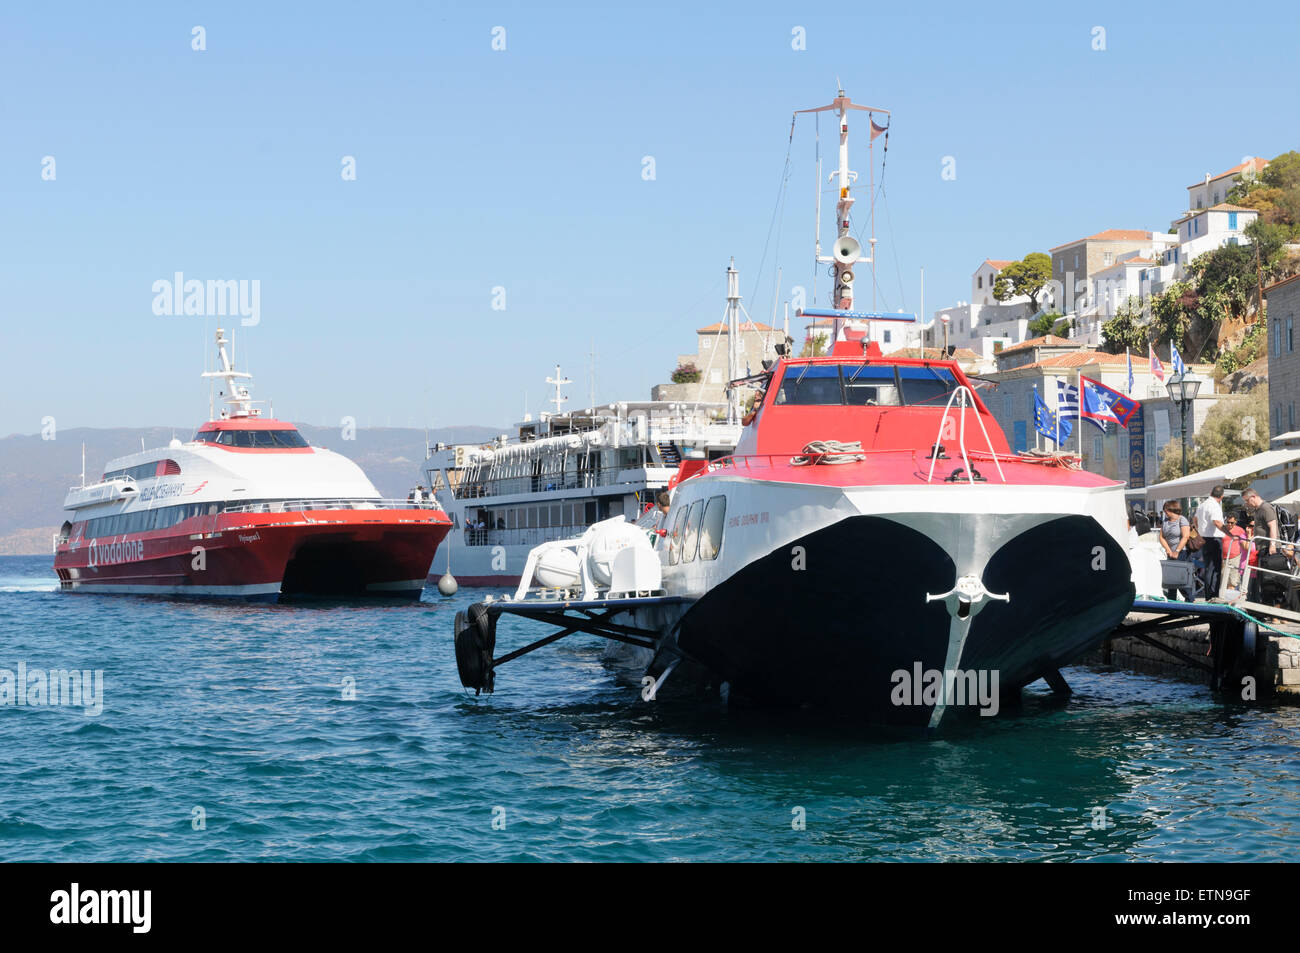 Un catamarano traghetto avvicinando il suo posto barca accanto a un aliscafo ormeggiata nel porto di Hydra, Isole Saroniche, Grecia Foto Stock